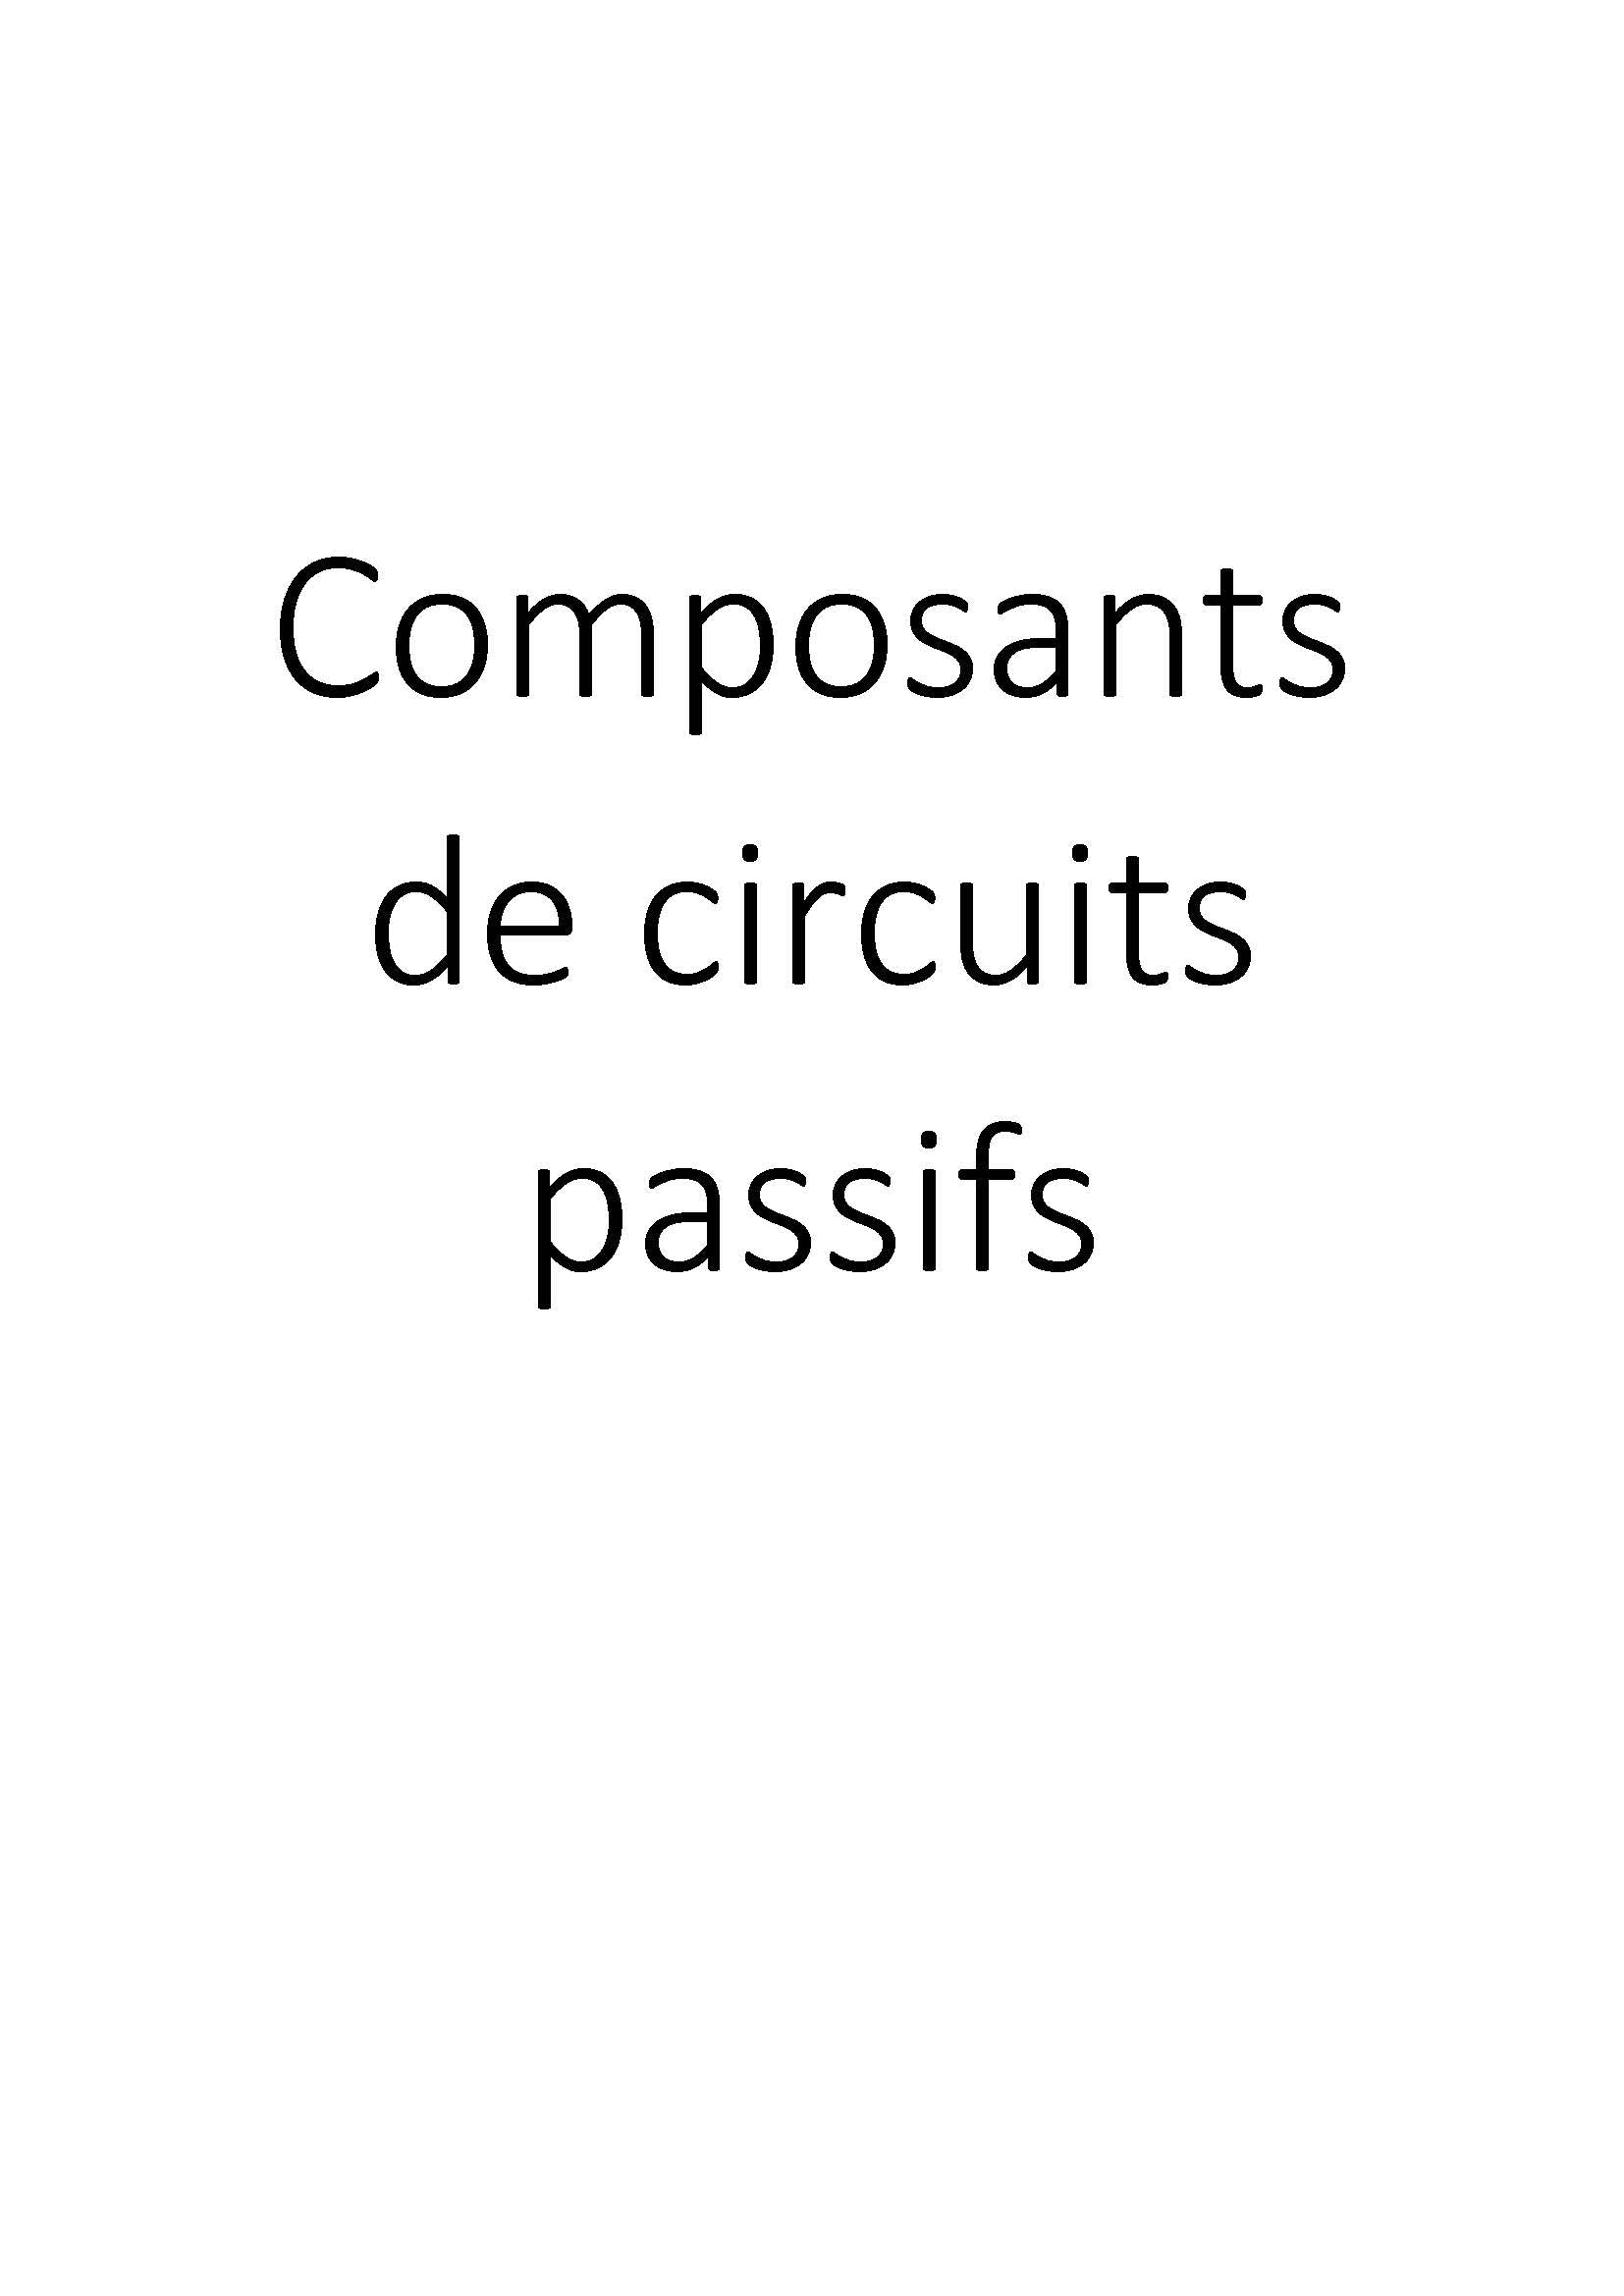 Composants de circuits passifs clicktofournisseur.com